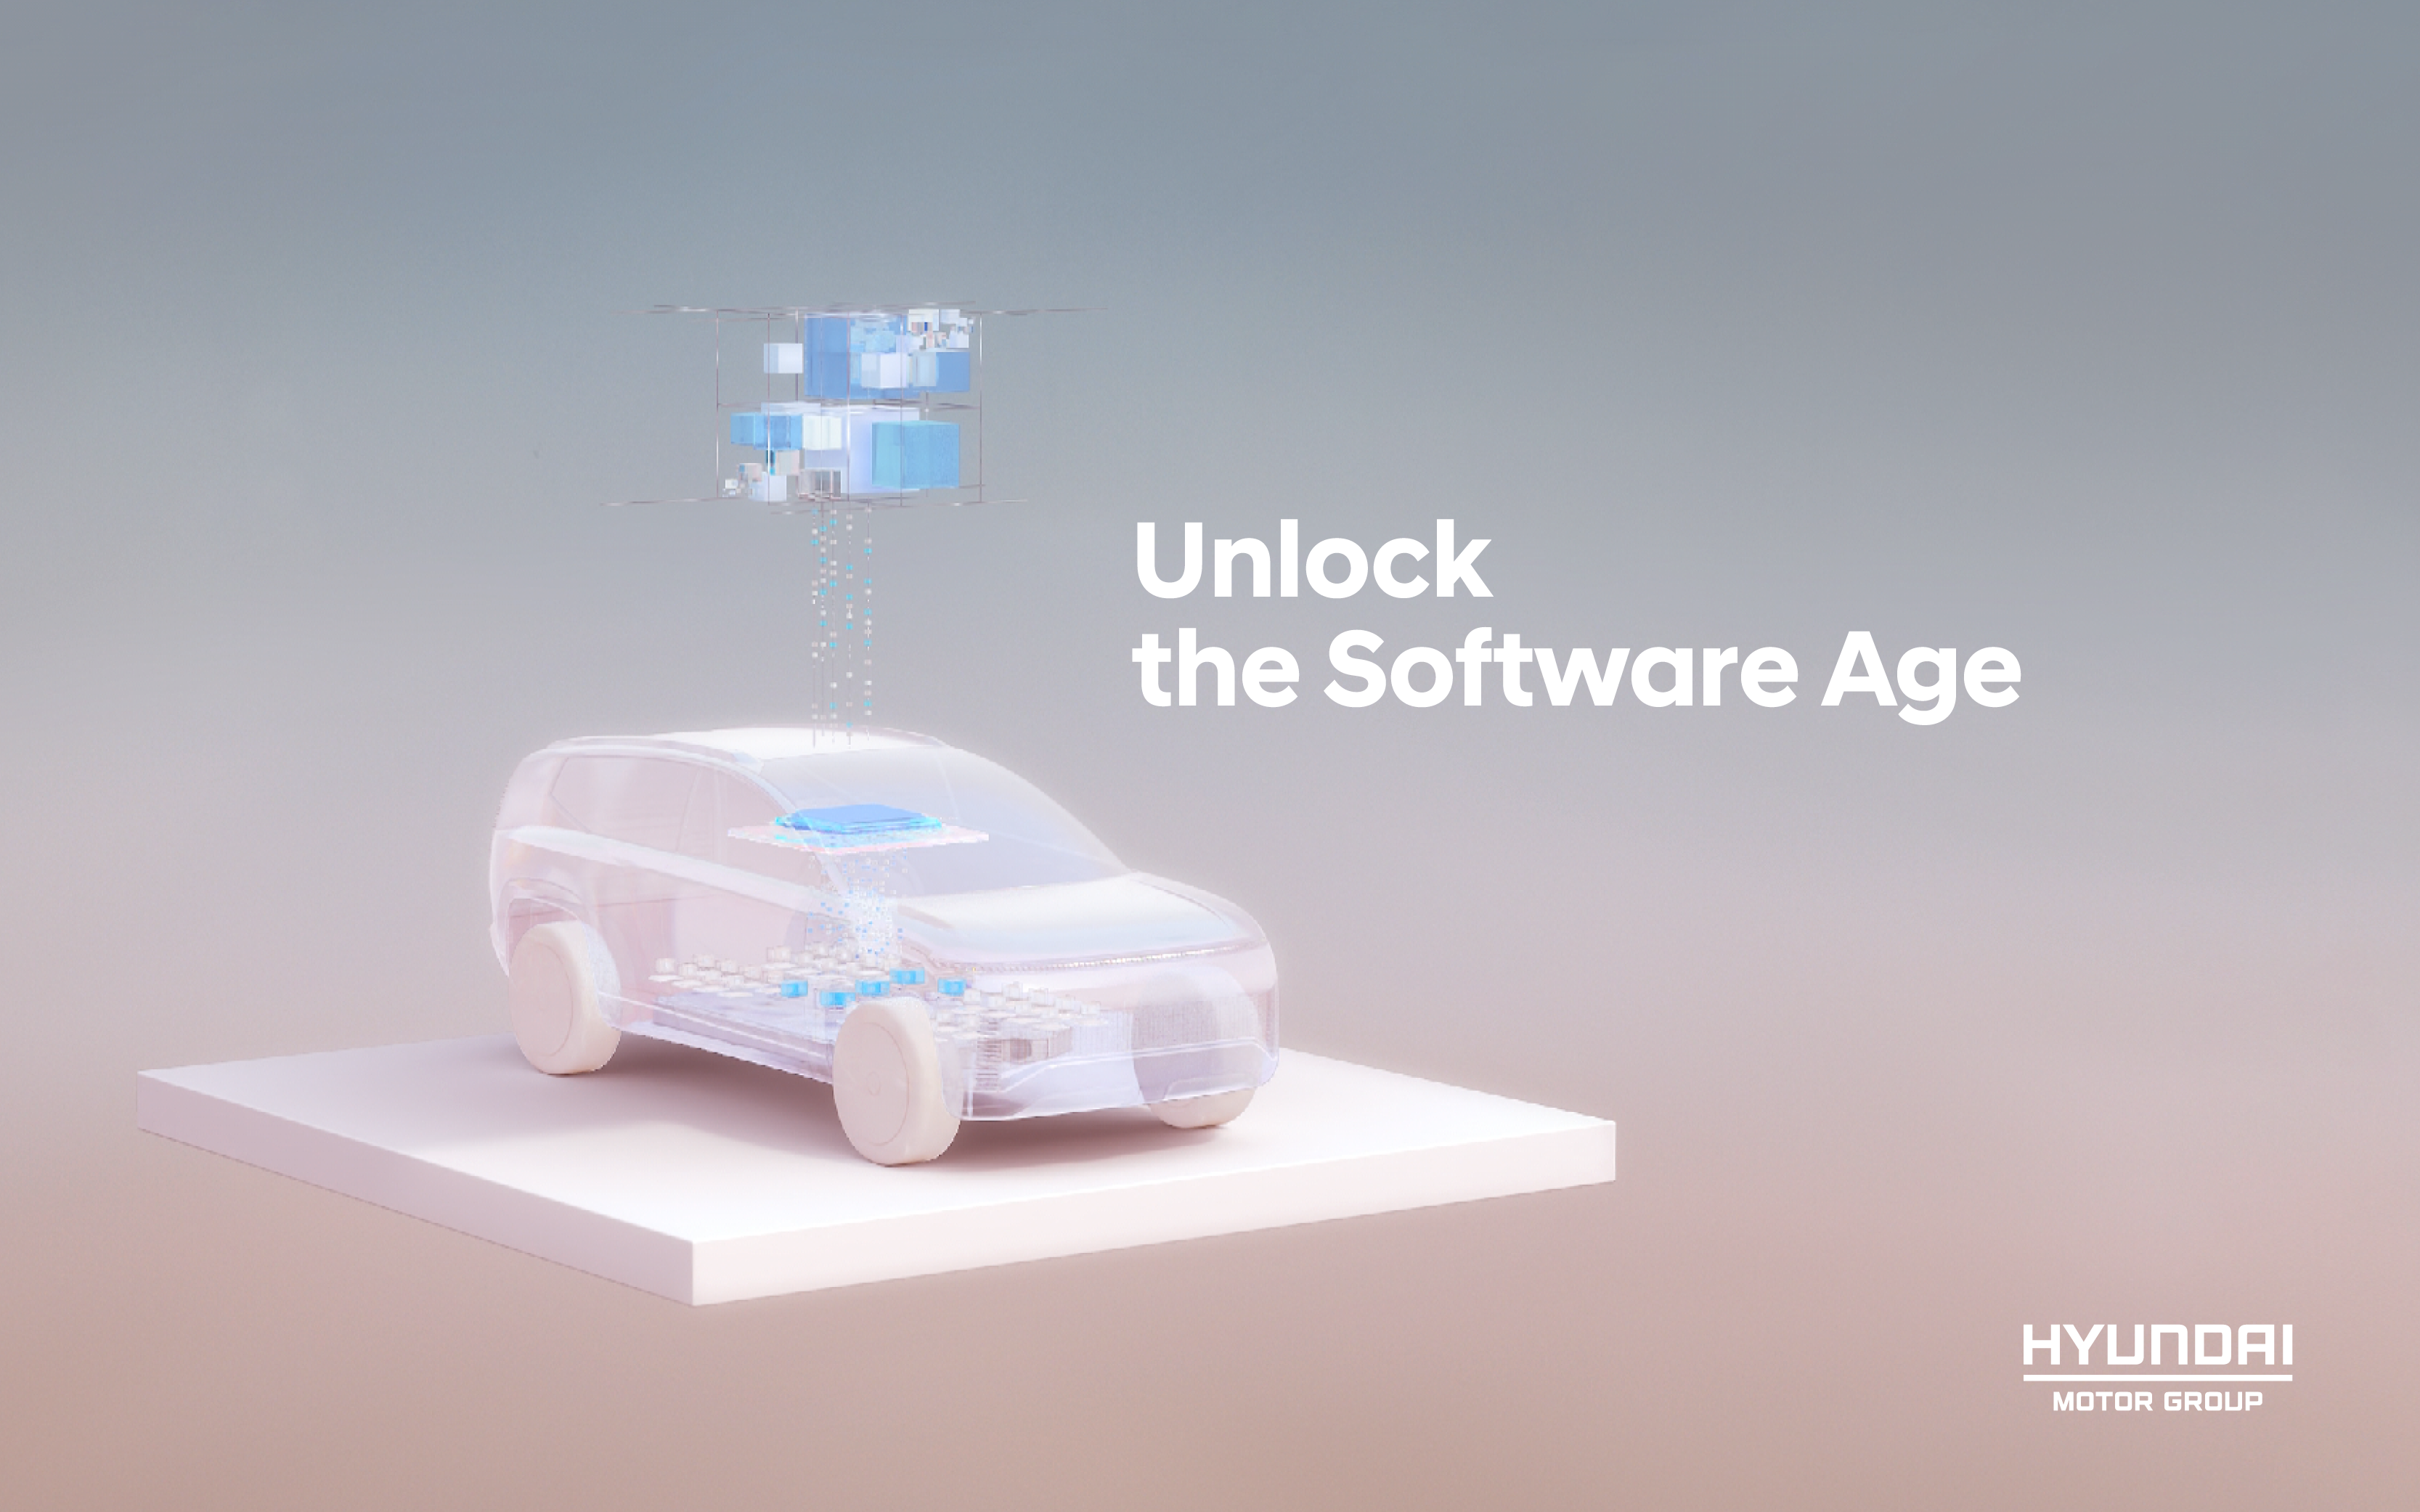 Hyundai Motor Group anuncia hoja de ruta futura para vehículos definidos por software en el Foro Global “Unlock the Software Age”